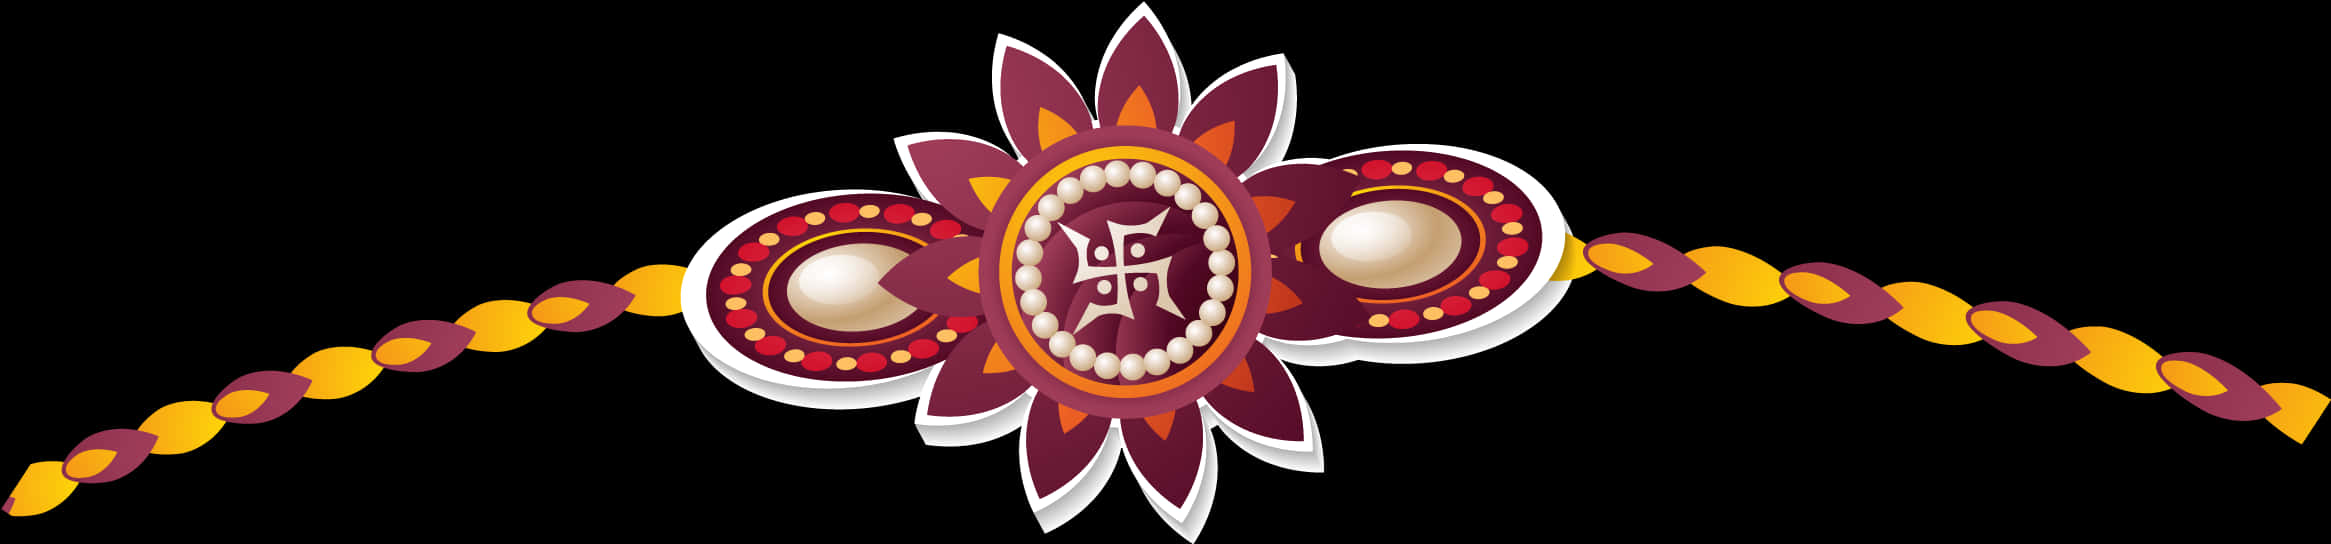 Traditional Rakhi Design PNG image